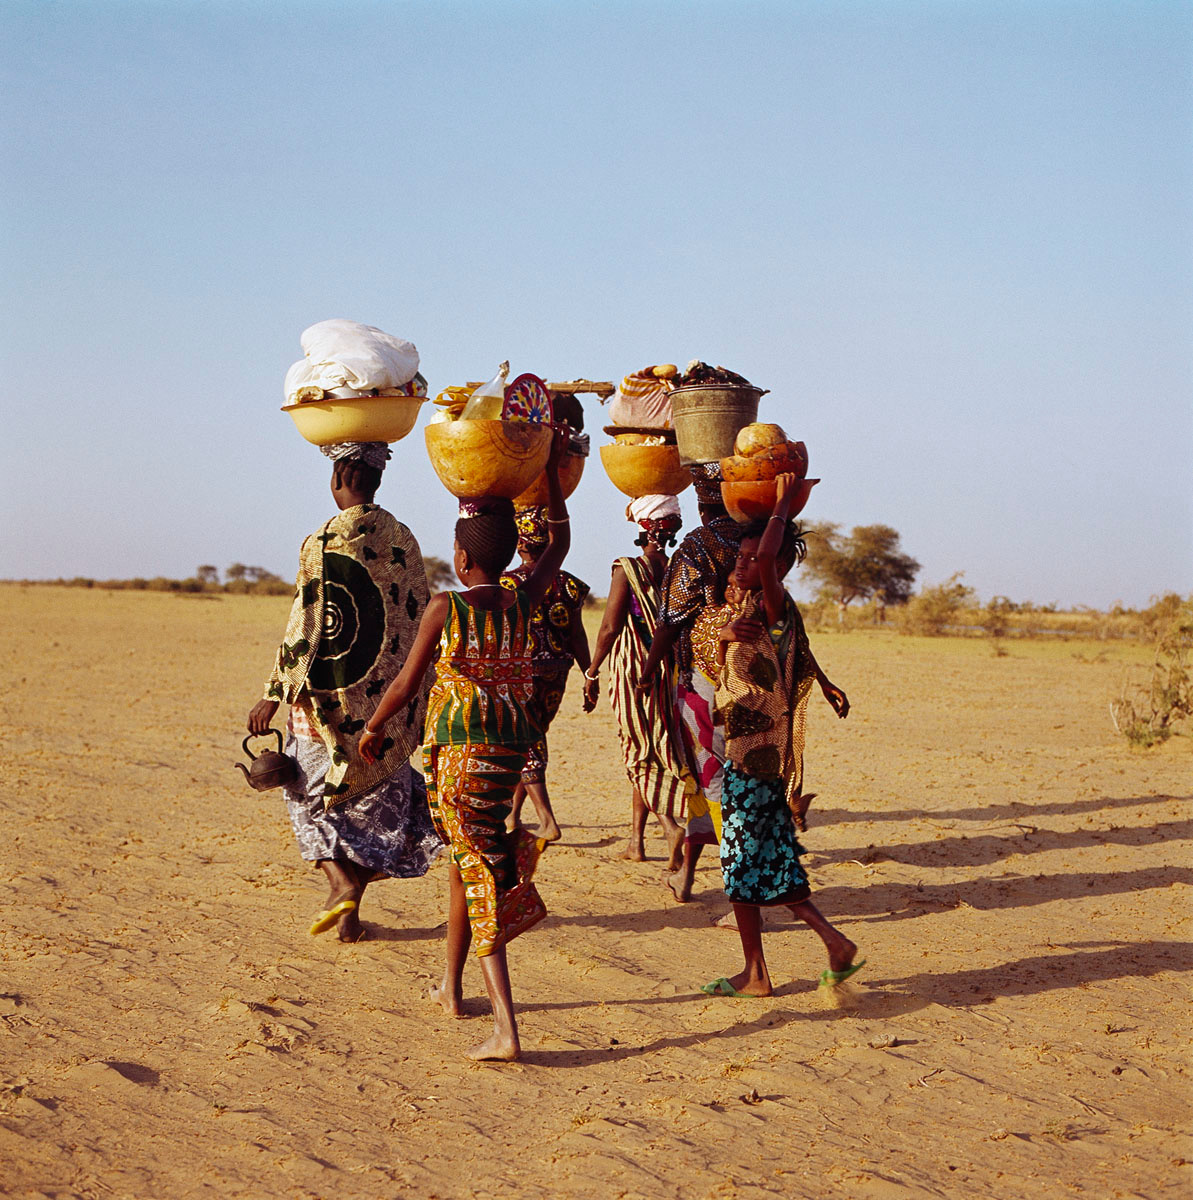 La photographie montre quatre femmes marchant dans le sable.